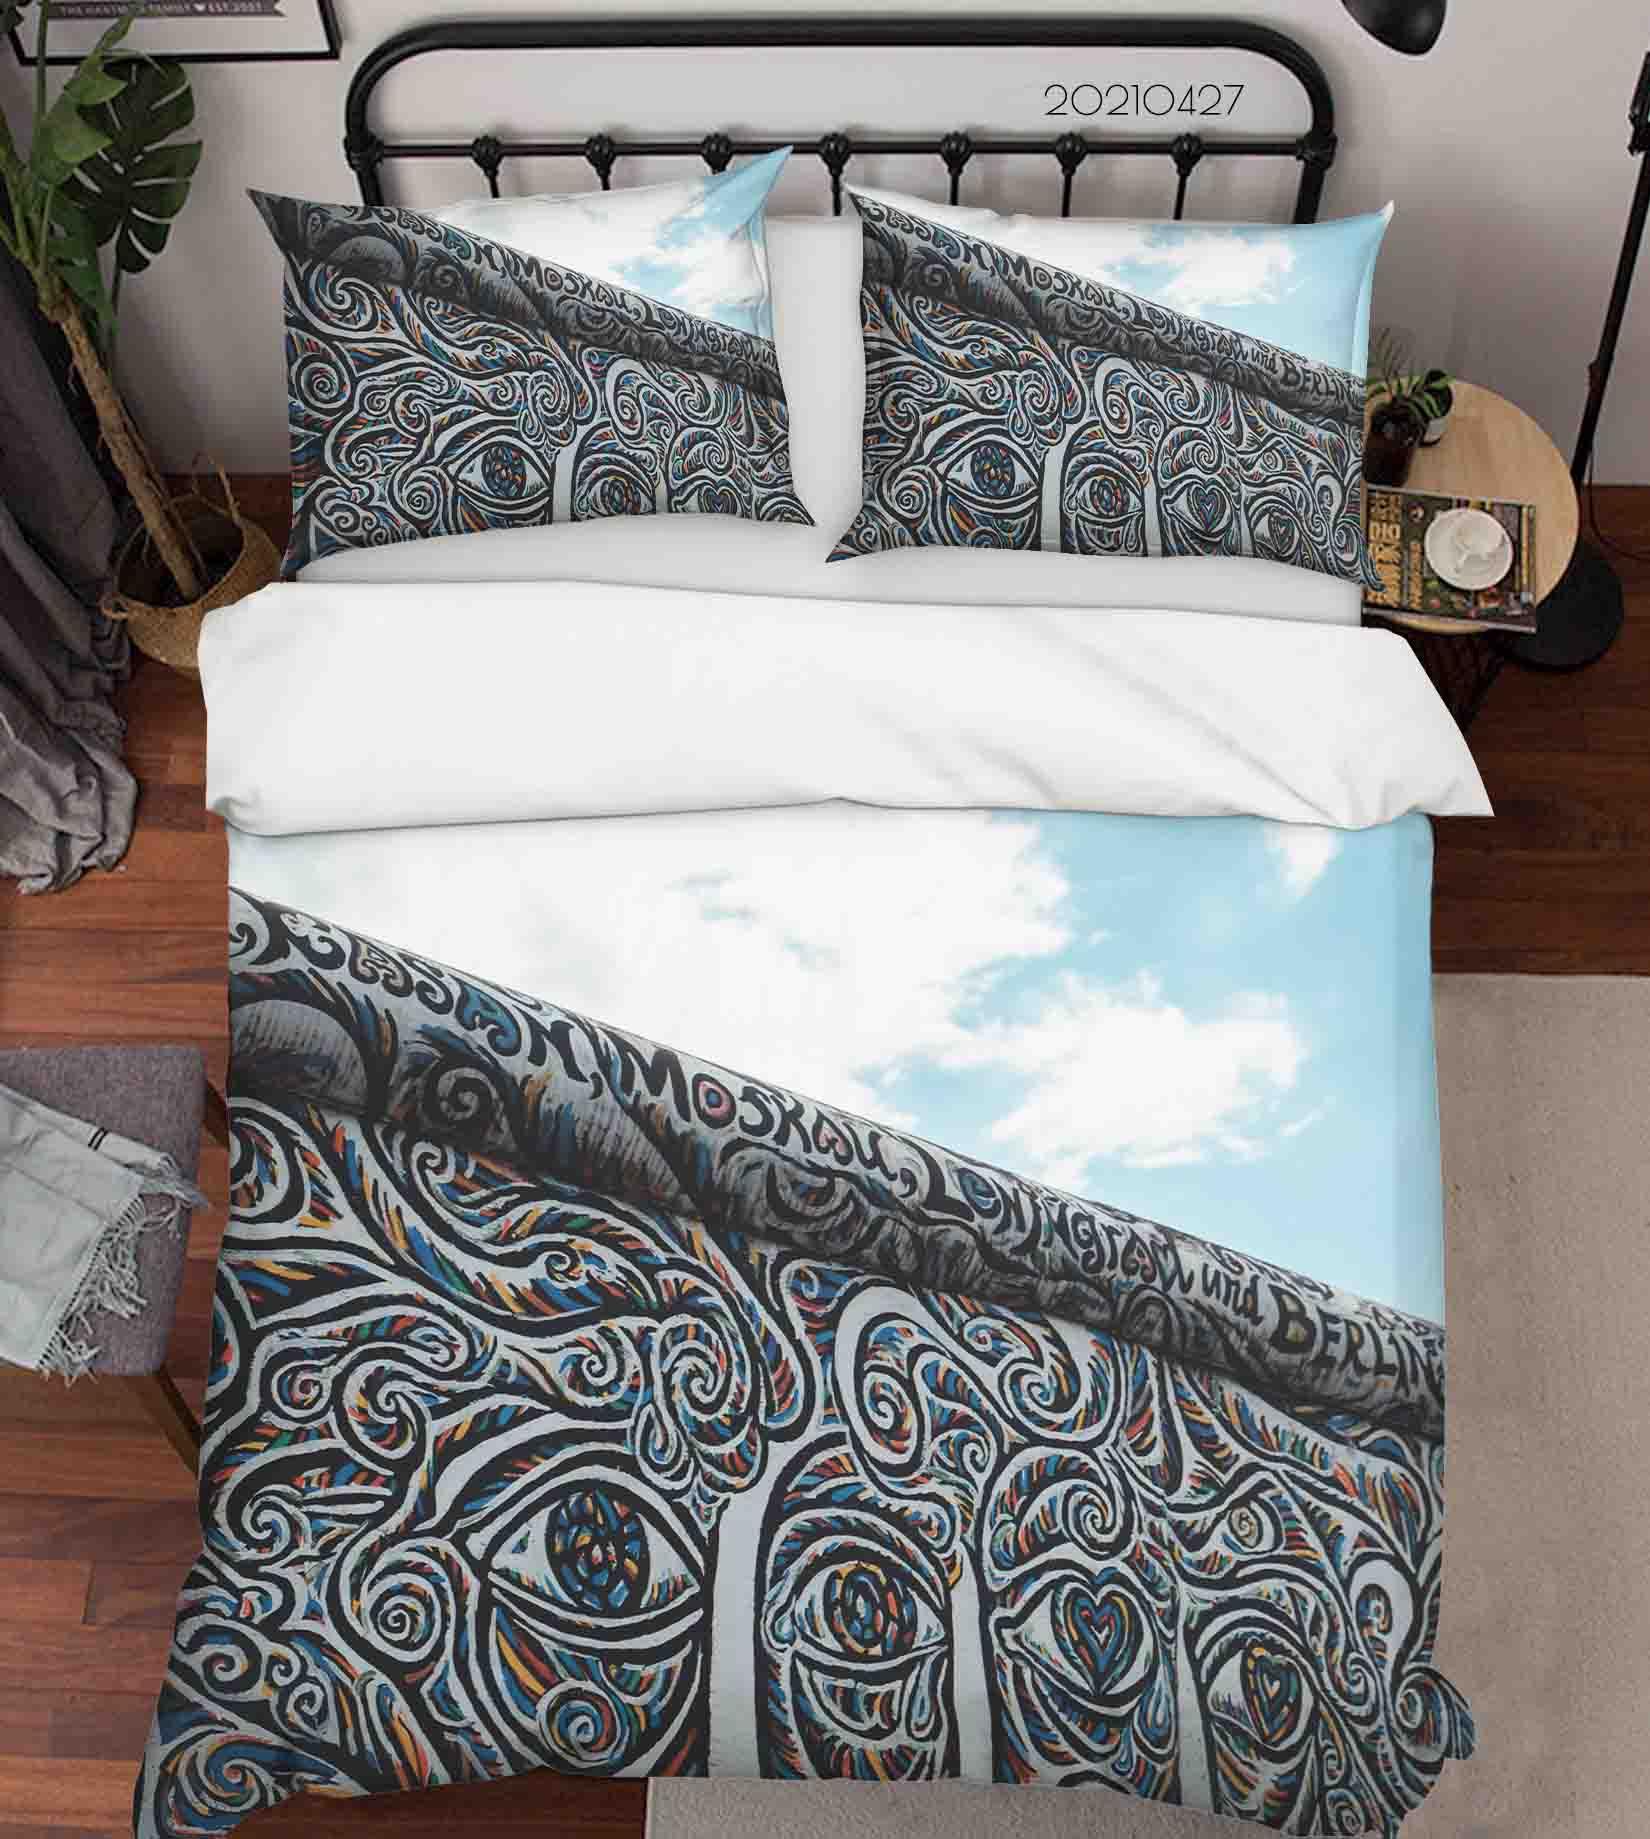 3D Abstract Art Street Graffiti Quilt Cover Set Bedding Set Duvet Cover Pillowcases 103- Jess Art Decoration